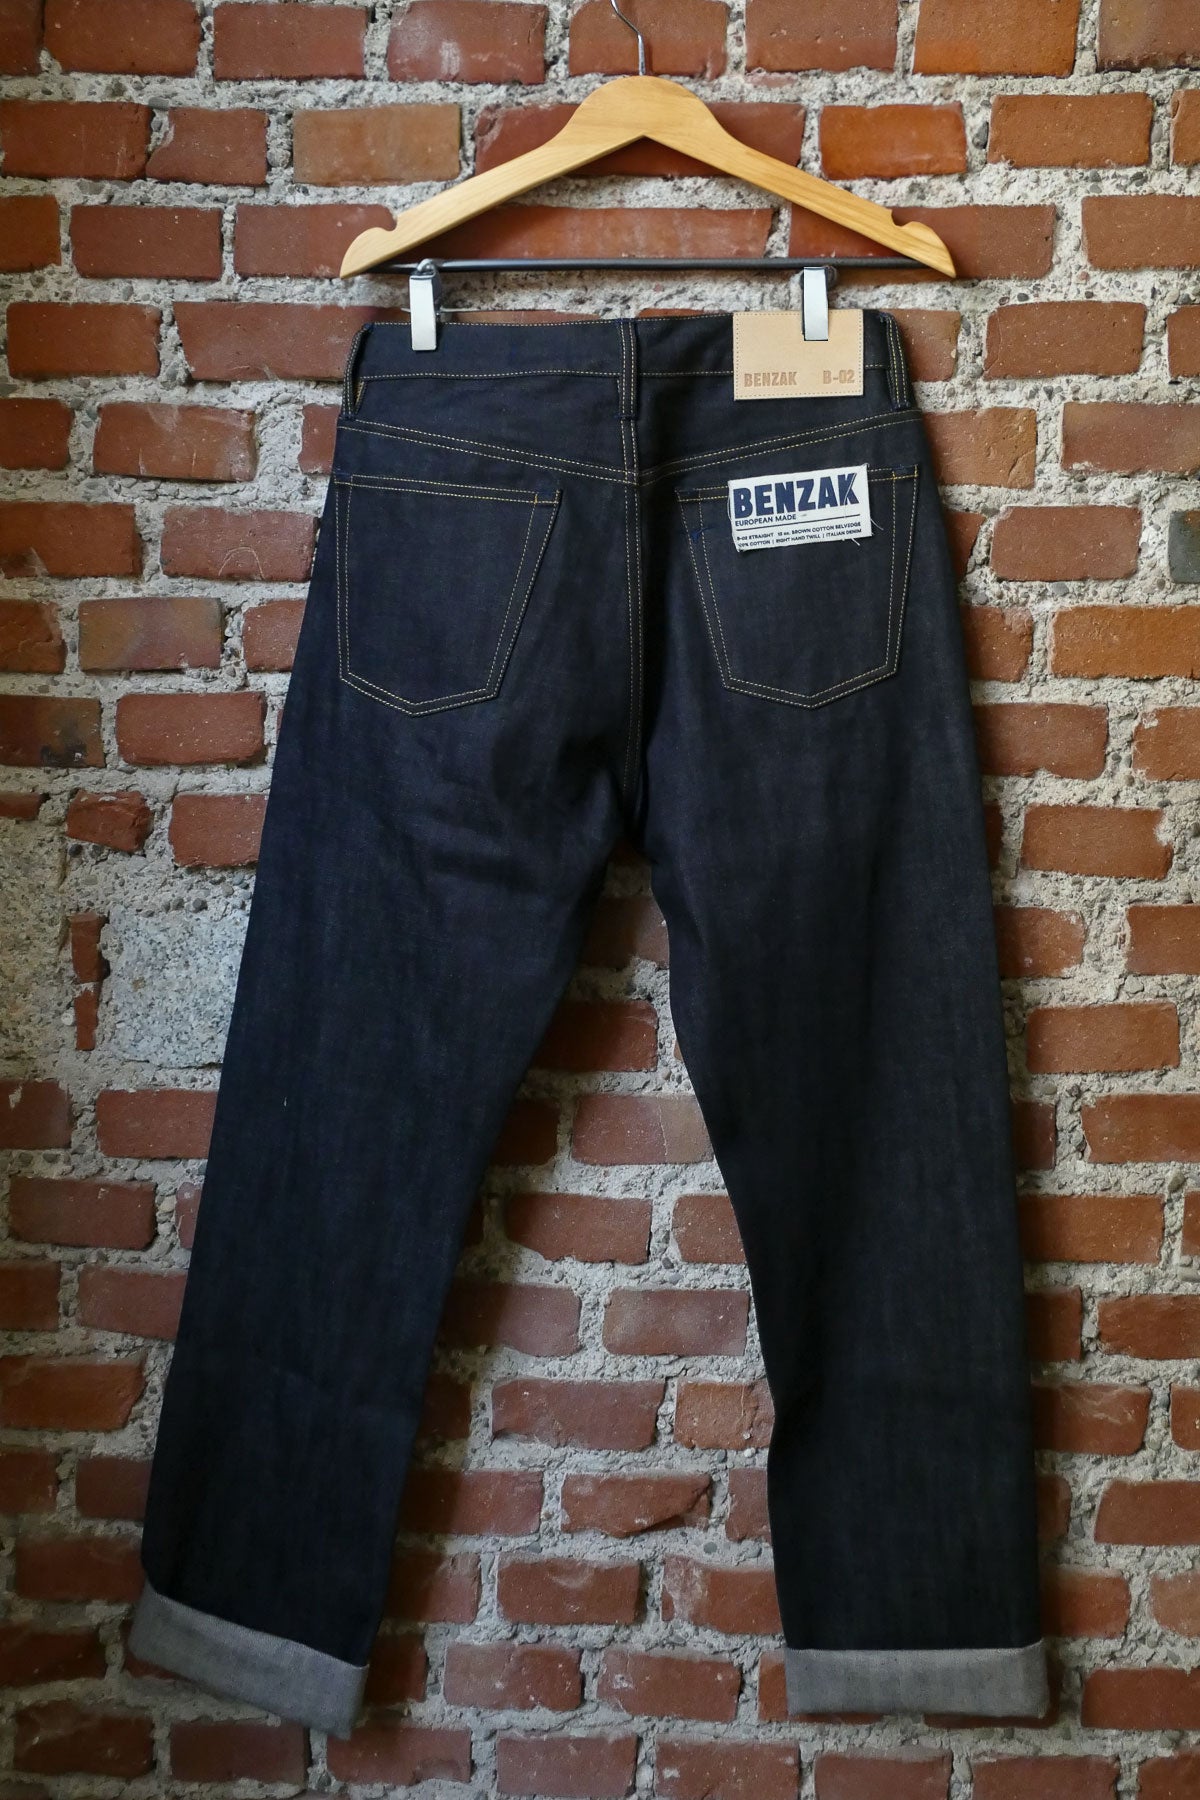 Benzak Workwear Kit ( Shirt + Jeans)